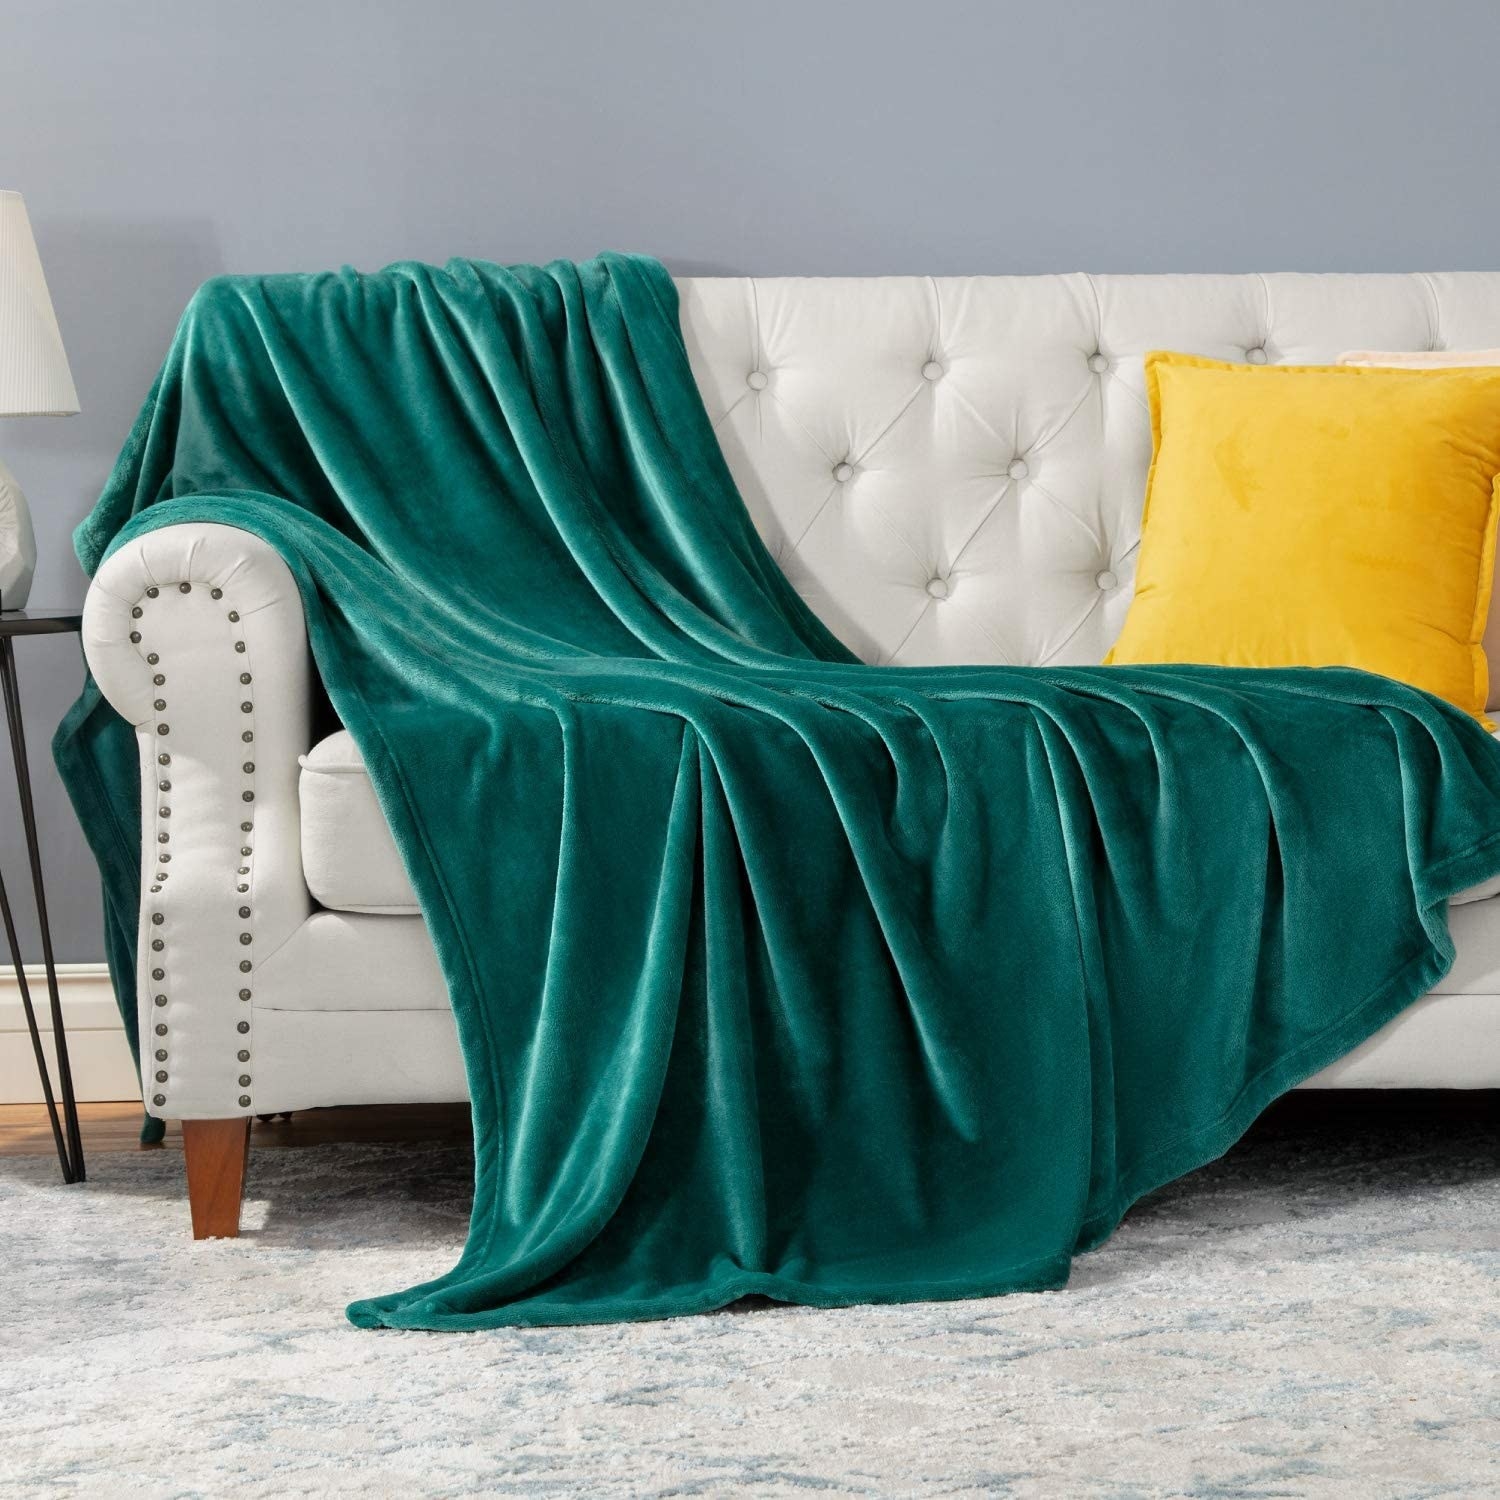 The green fleece blanket